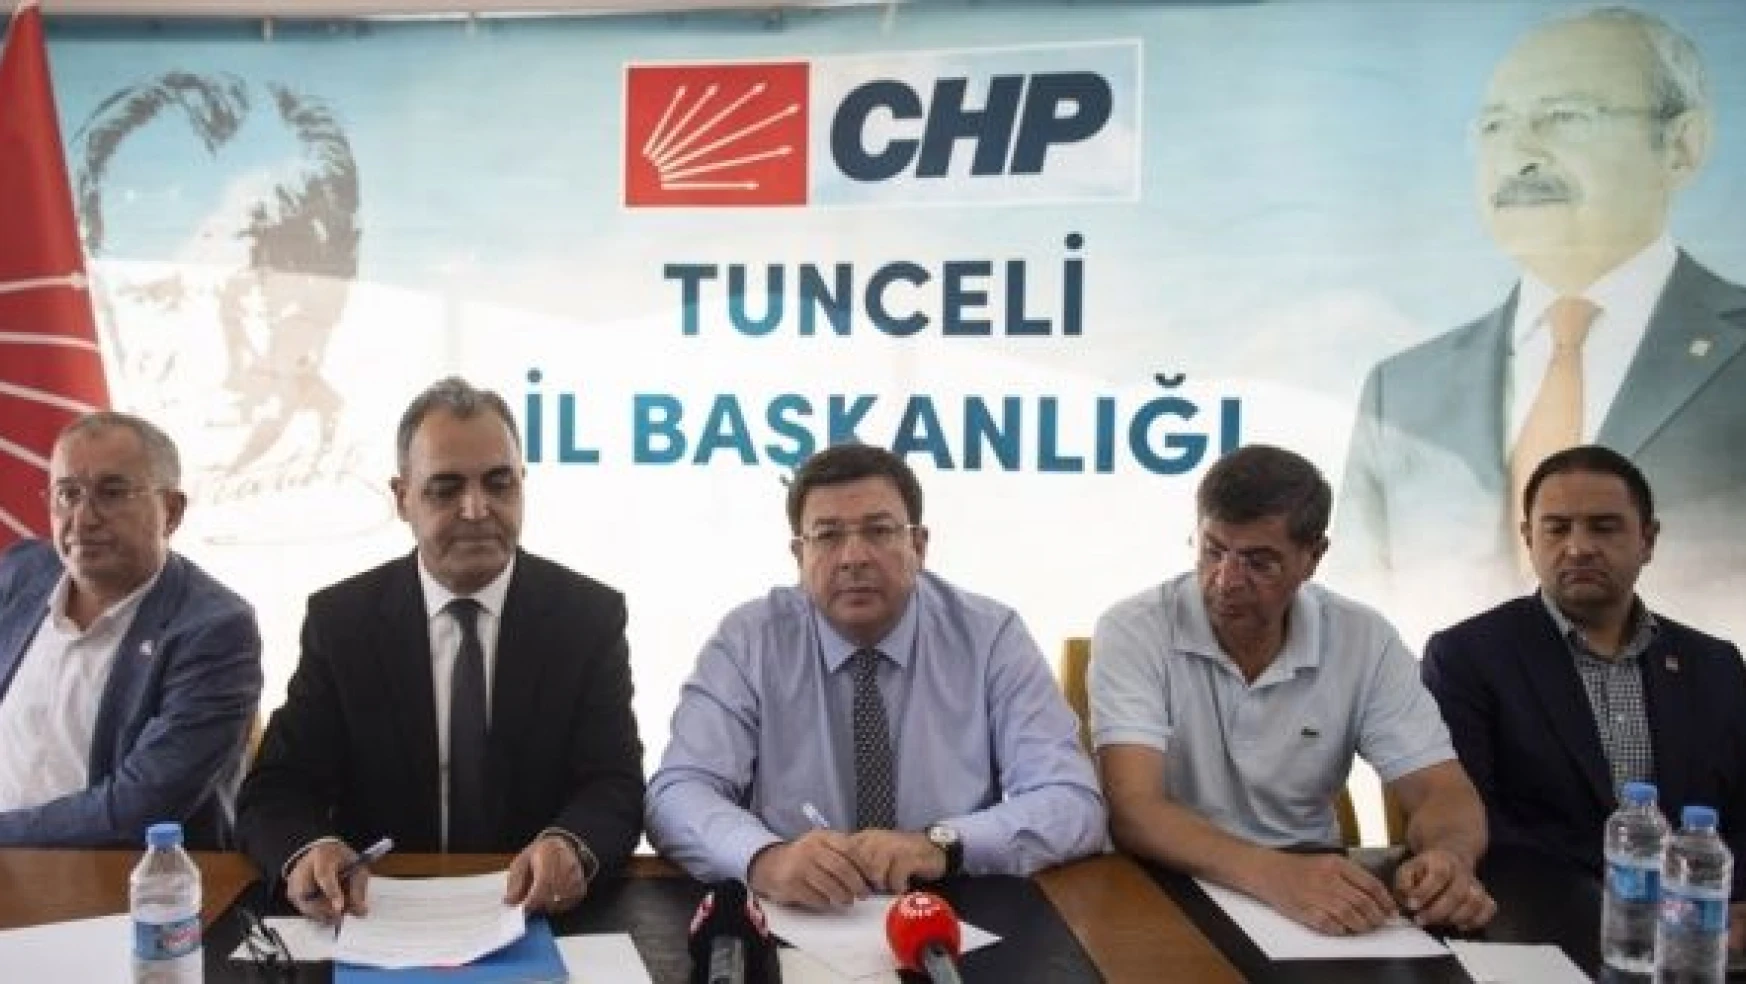 CHP Genel Başkan Yardımcısı Erkek: " Güçlendirilmiş parlamenter sistemi getireceğiz"